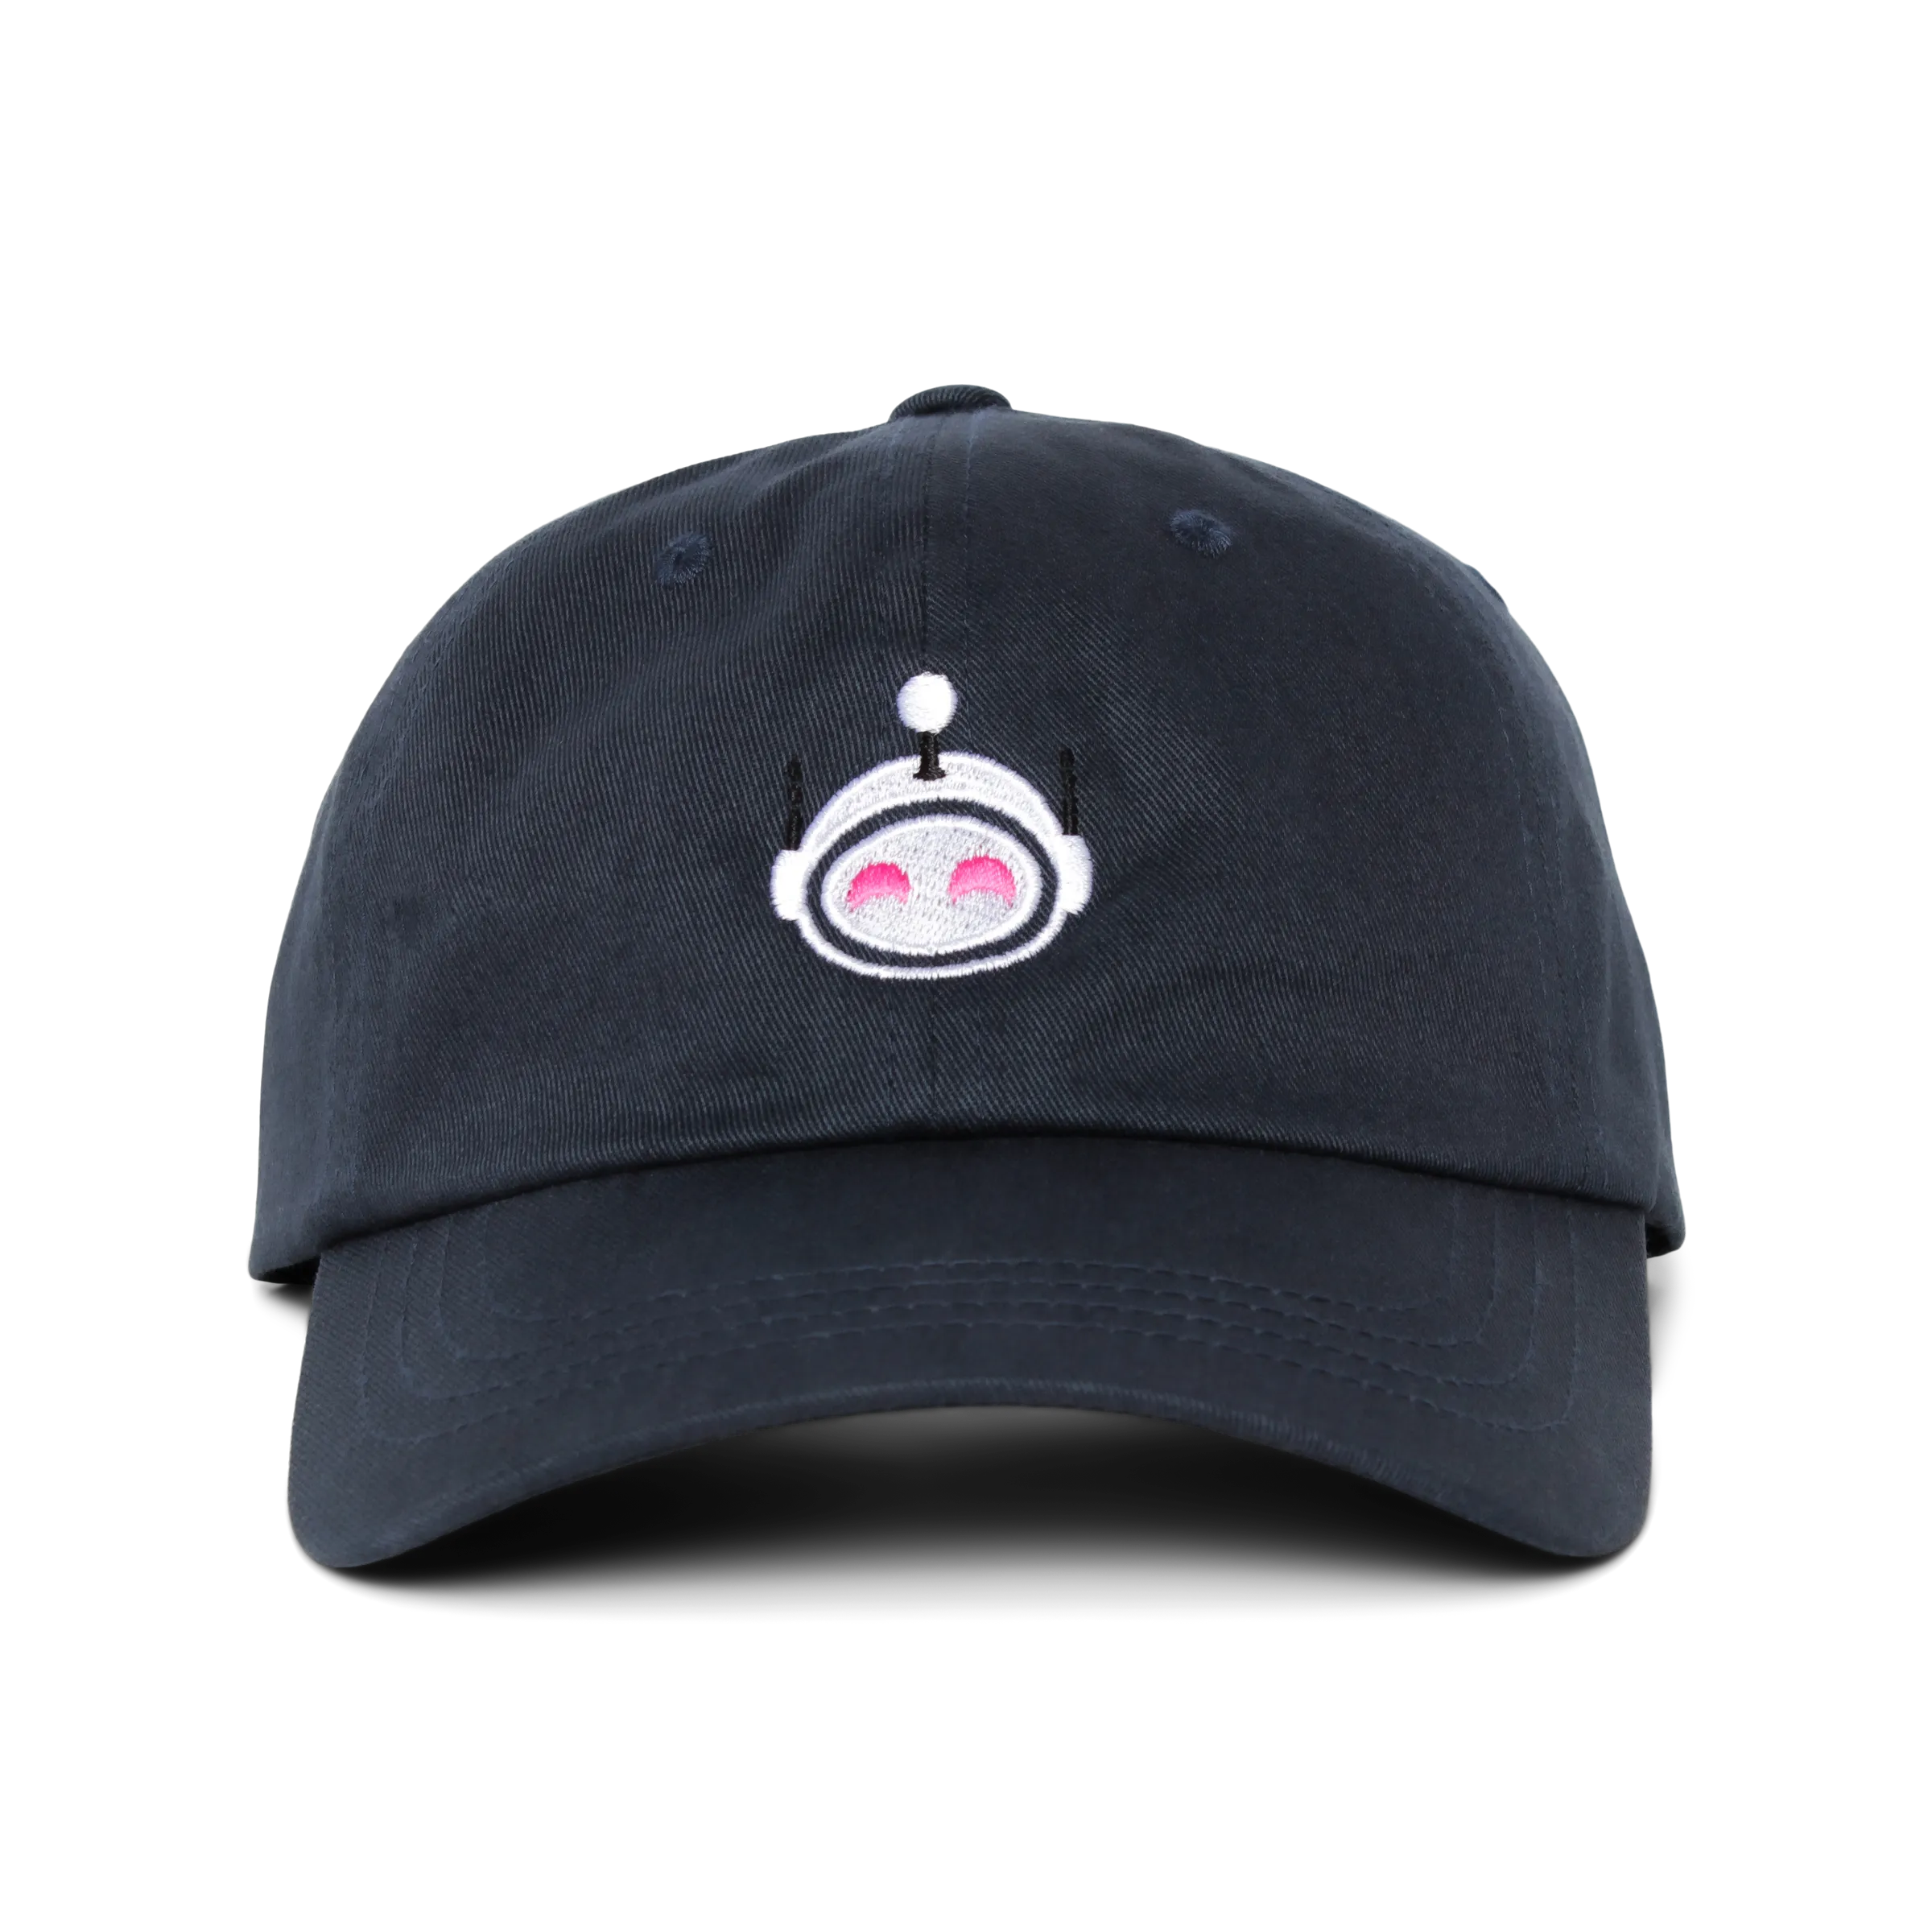 Apollo Classic Hat” graphic dad hat by Apollo. | Cotton Bureau